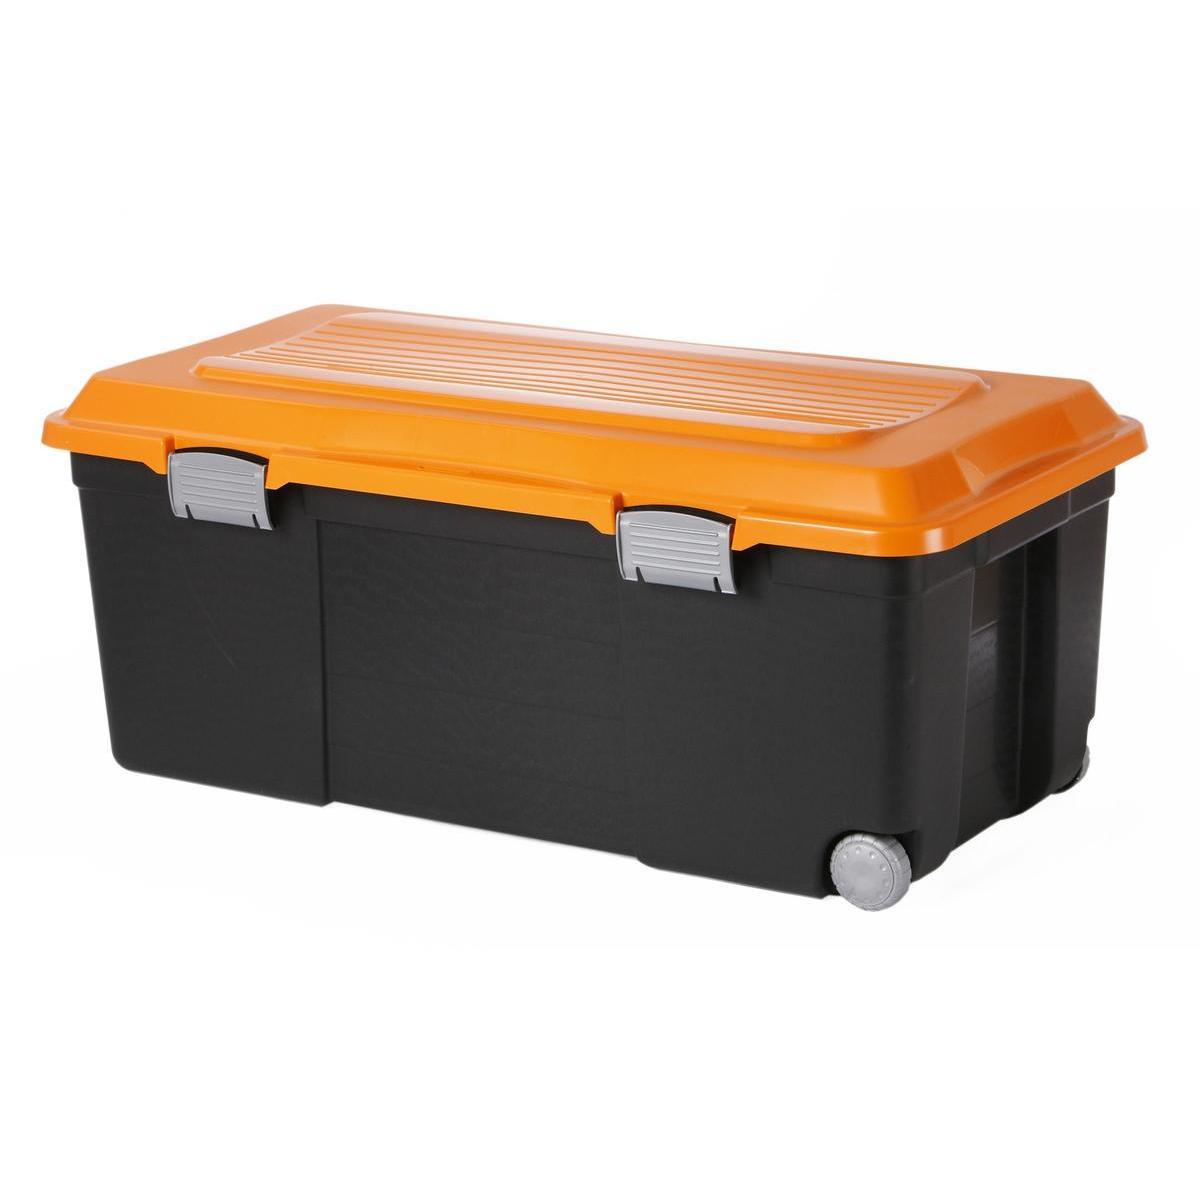 Malle de rangement - Plastique - 80 x 40 x H 34 cm - Orange et noire